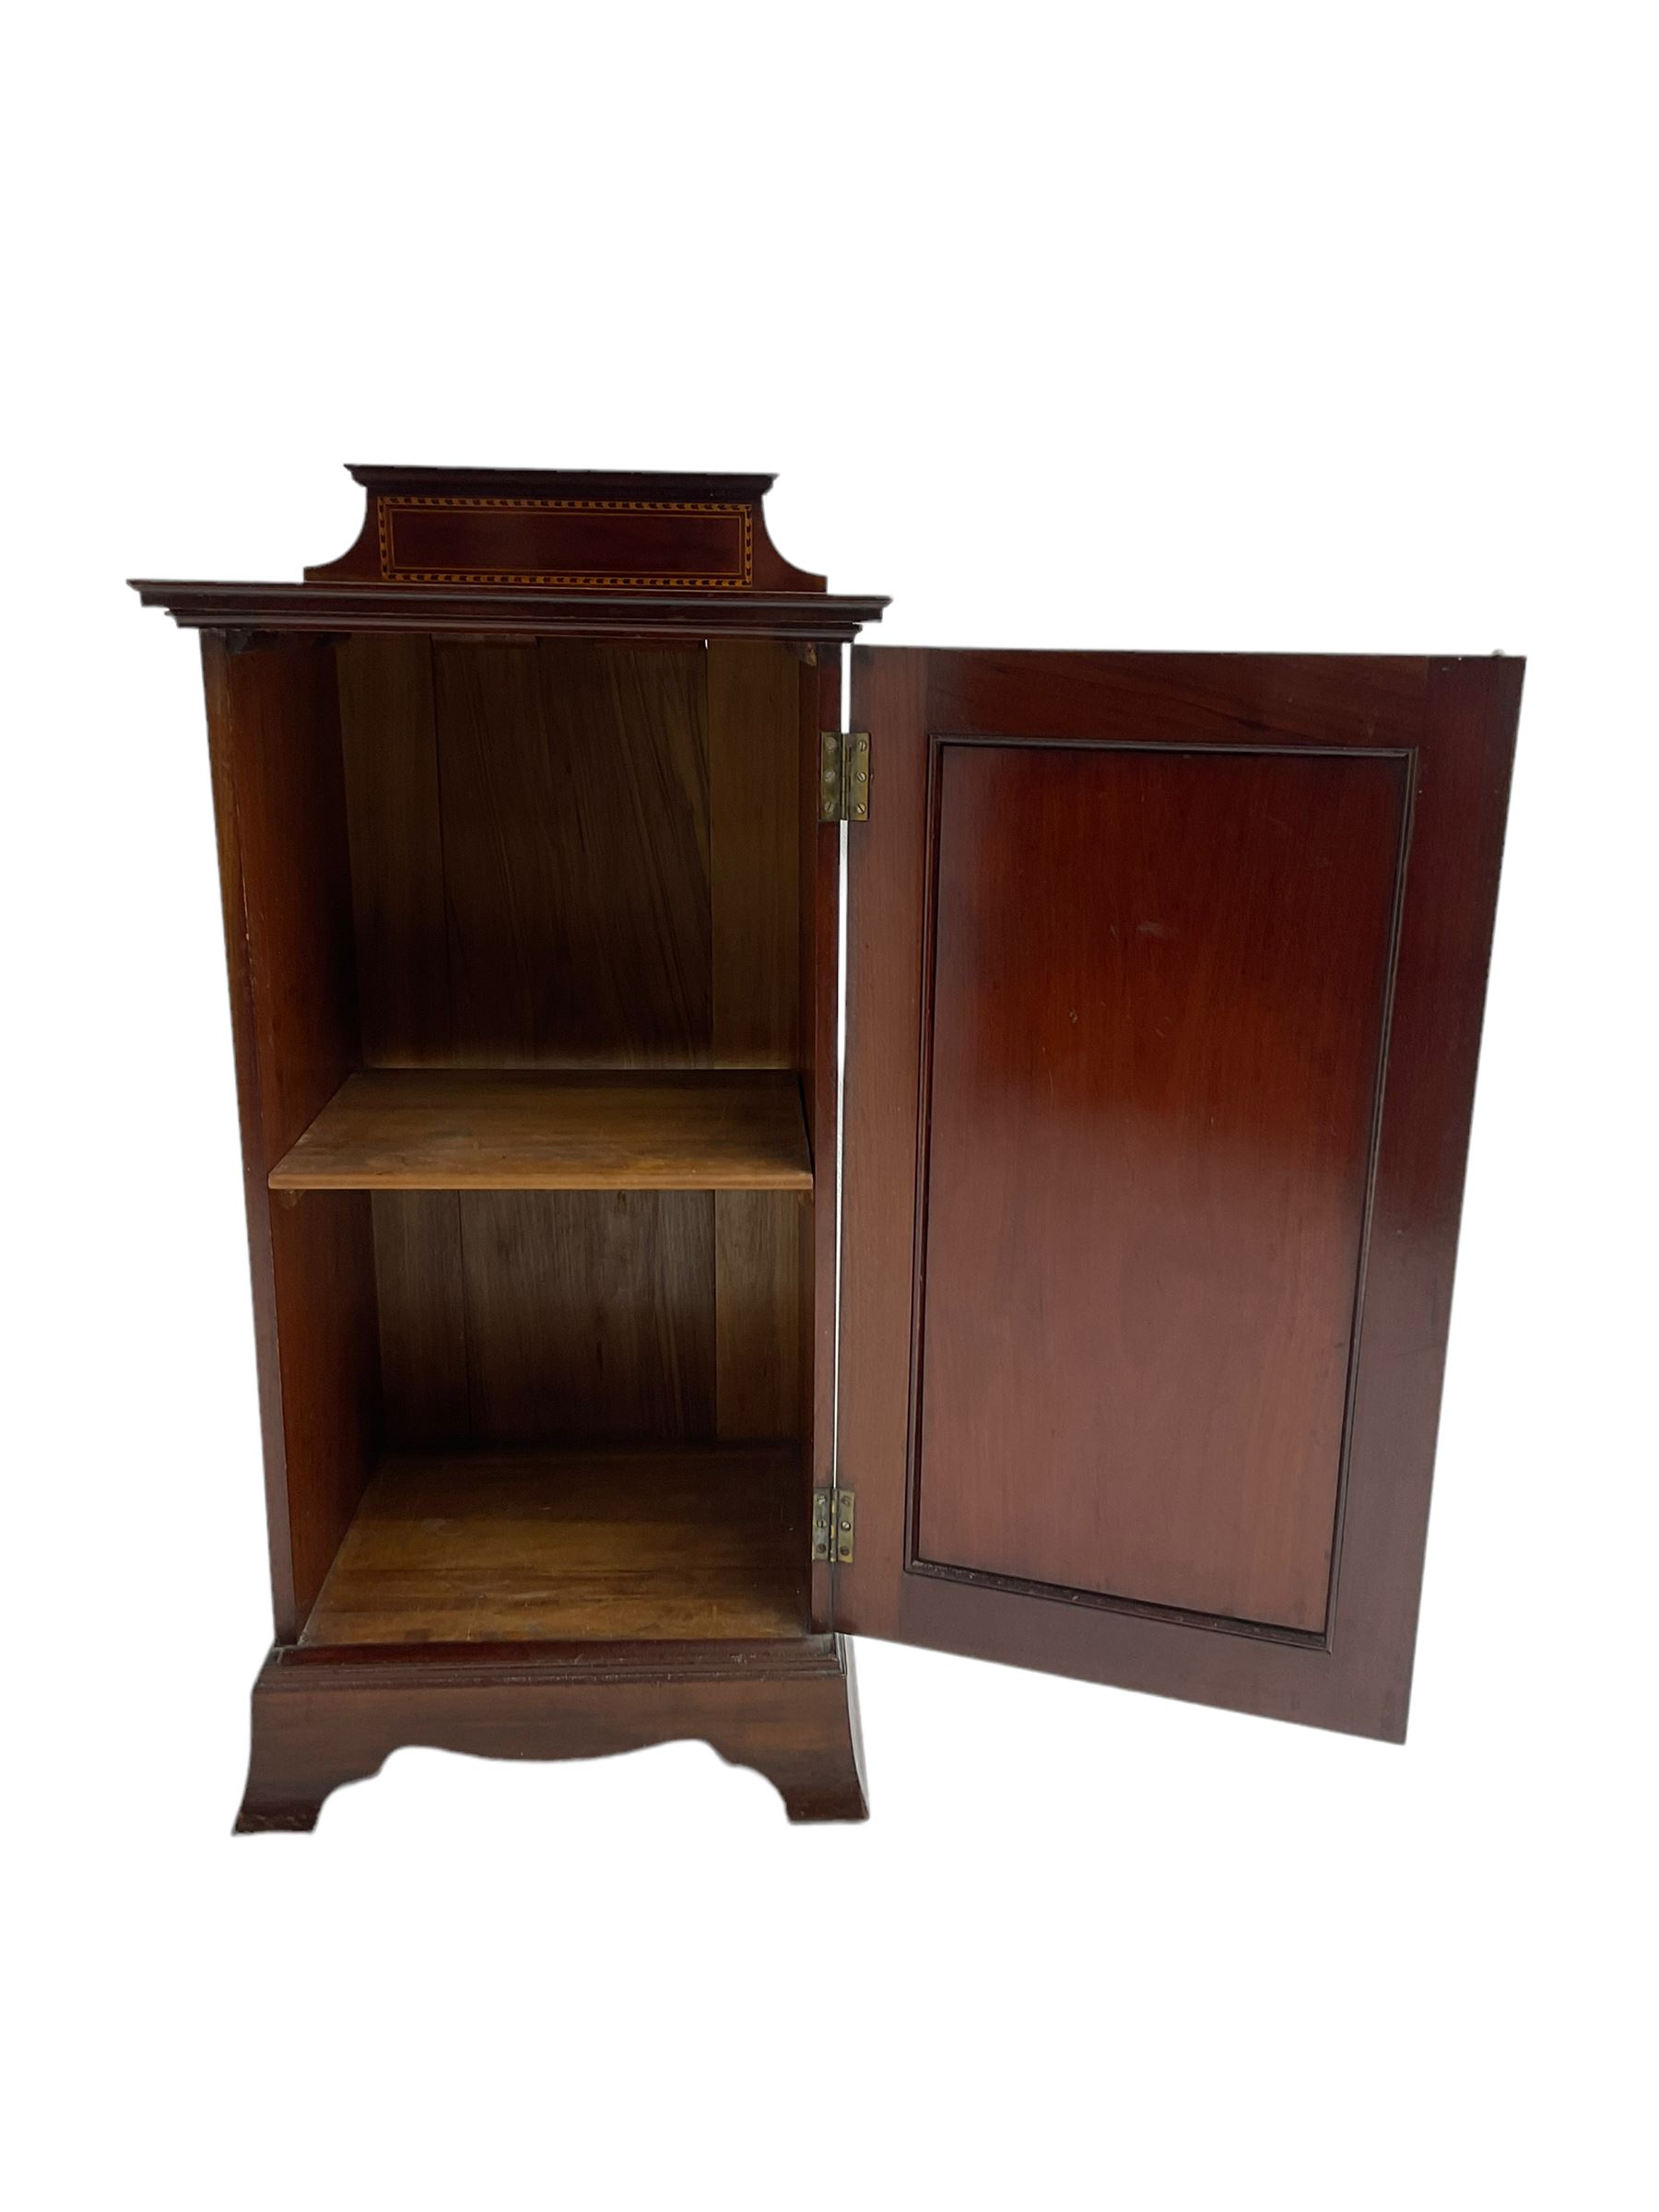 Edwardian inlaid mahogany bedside cabinet - Image 4 of 7